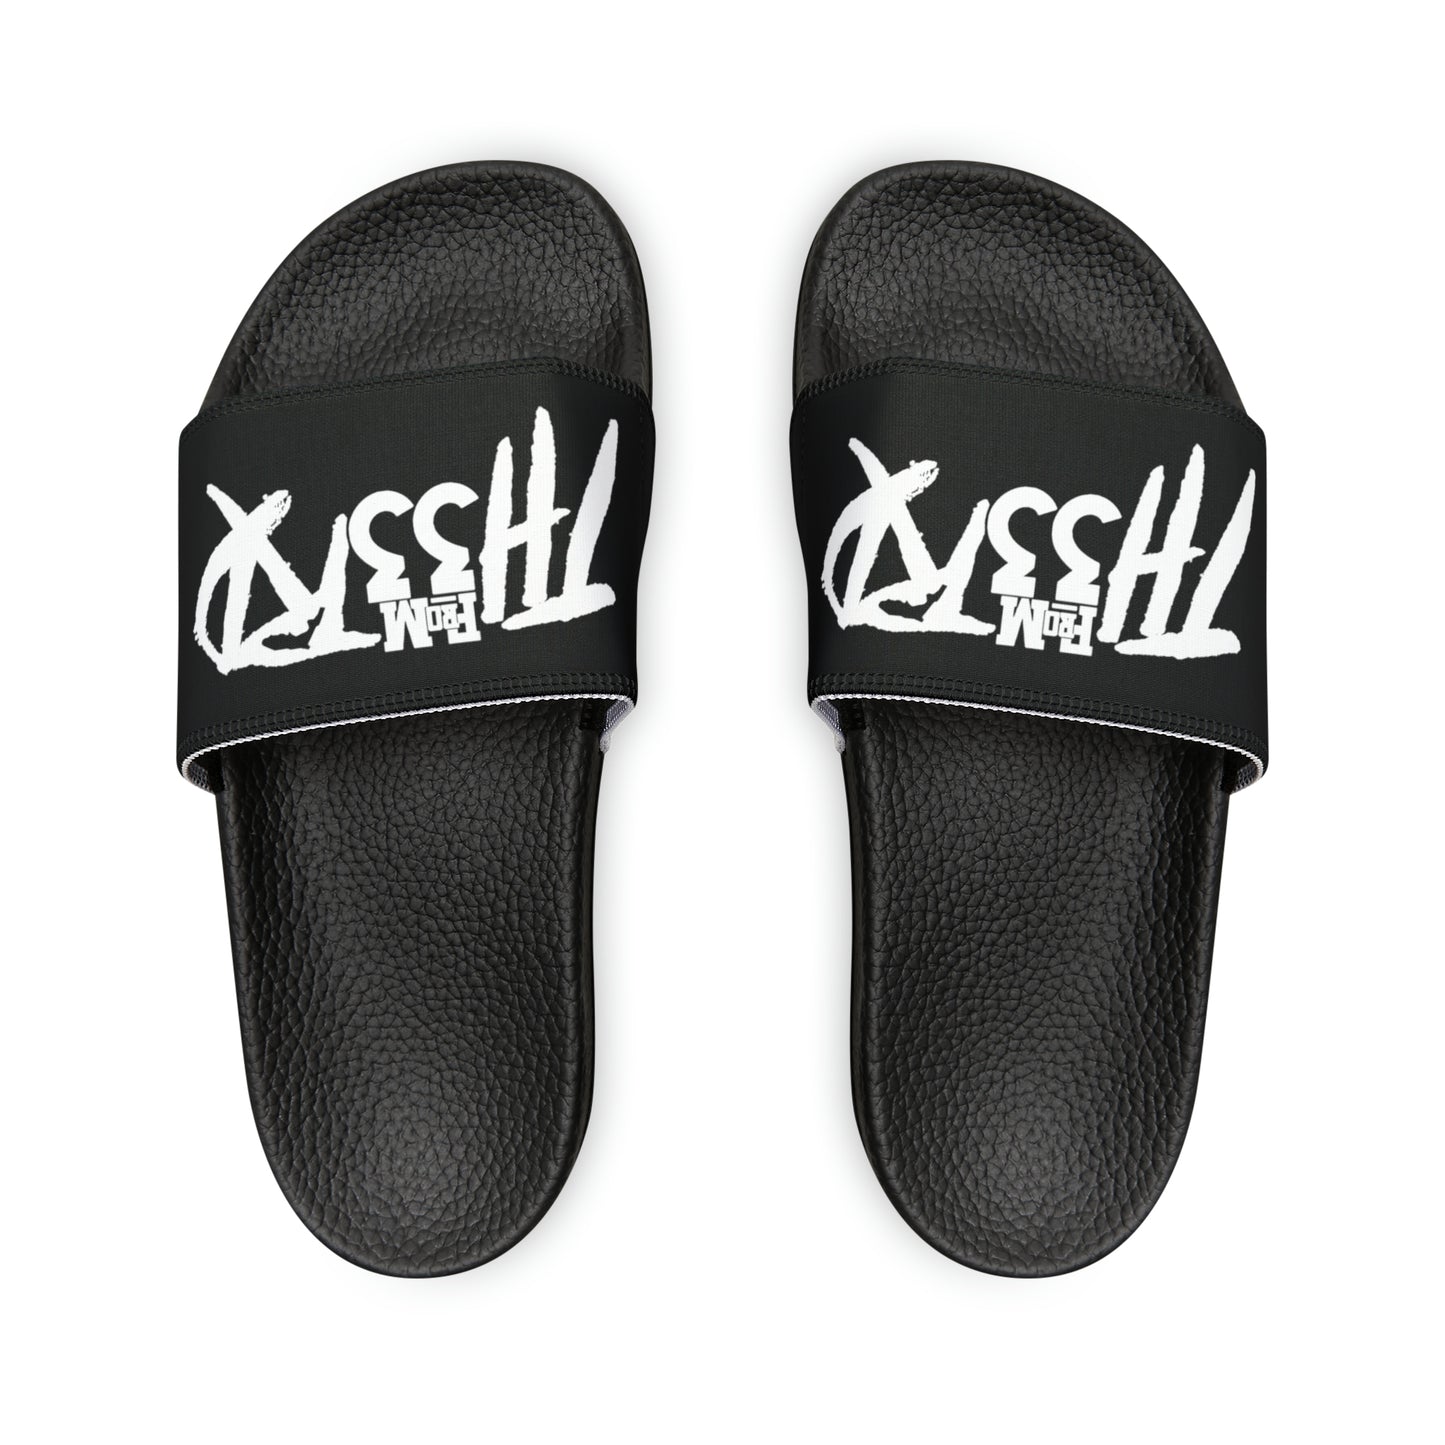 Fromth33rd Women's Slide Sandals Black/White